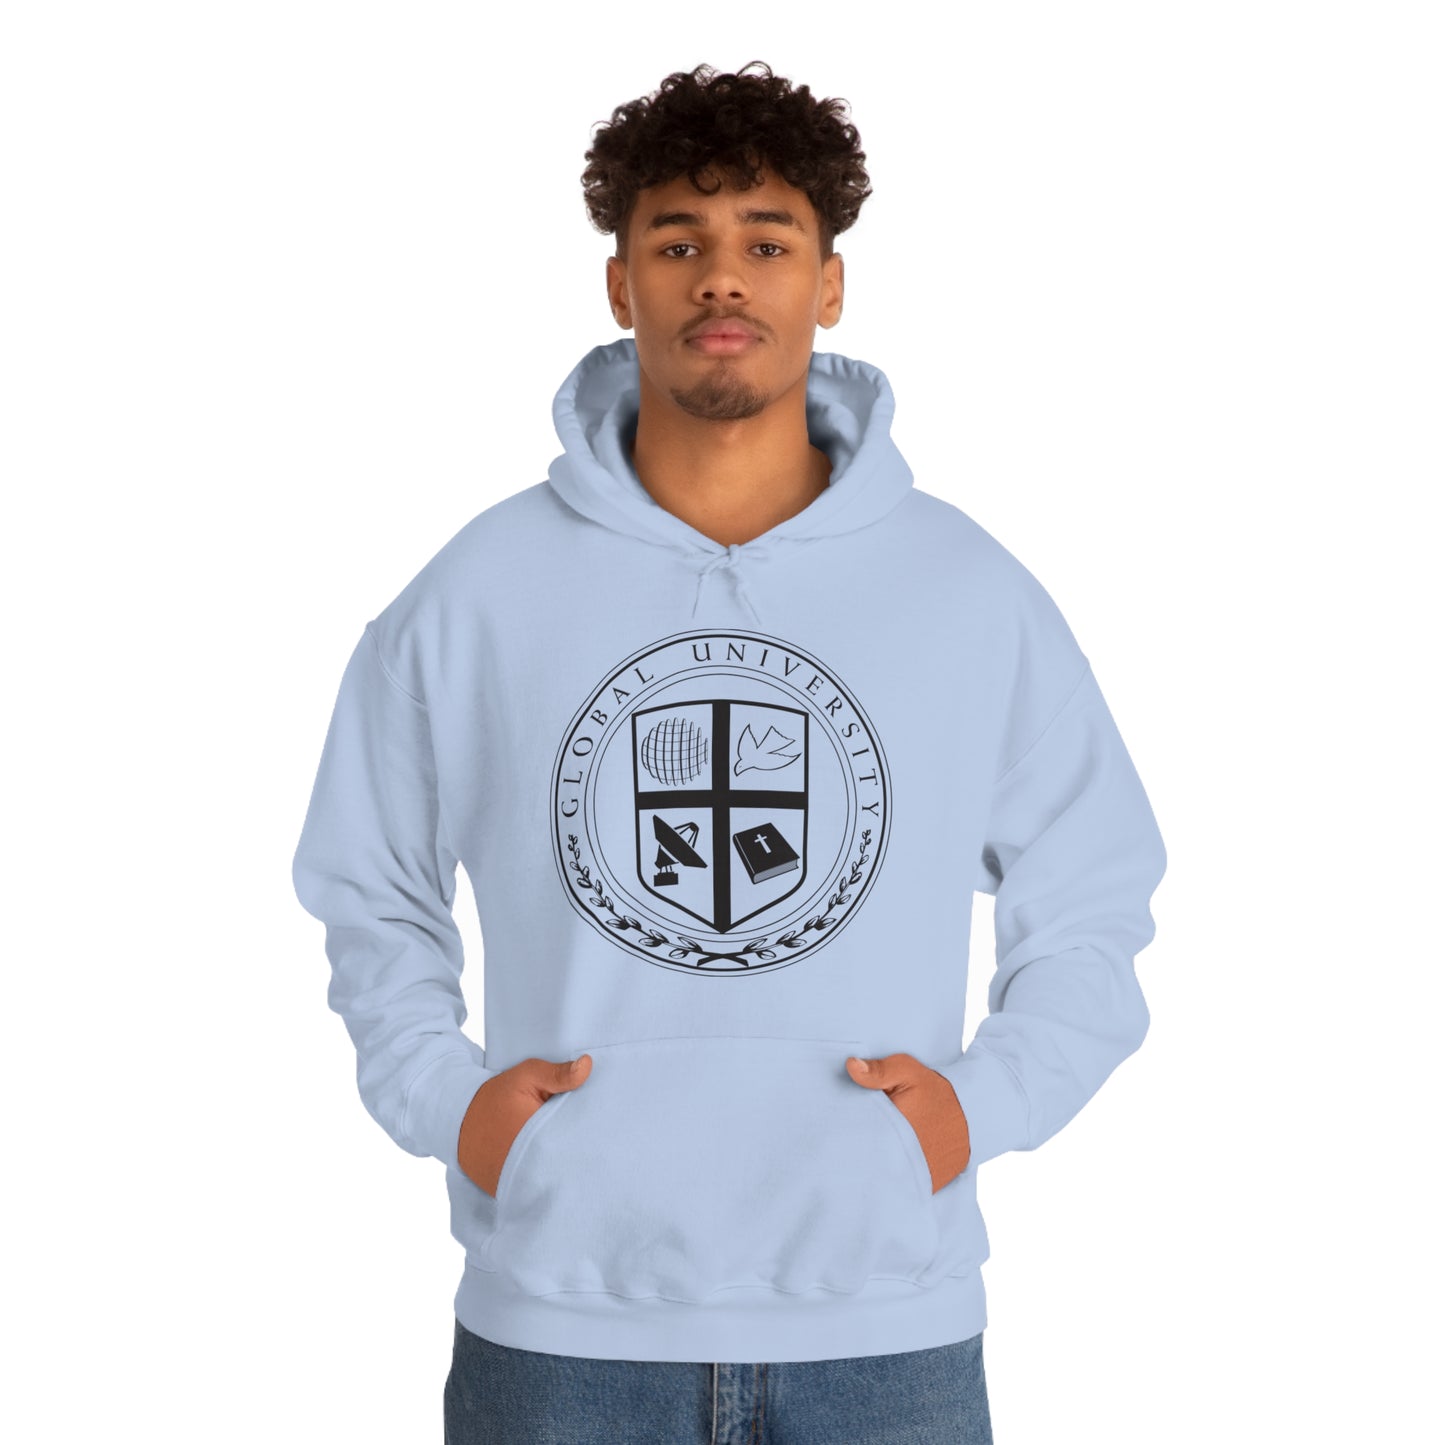 Global University Seal Sweatshirt